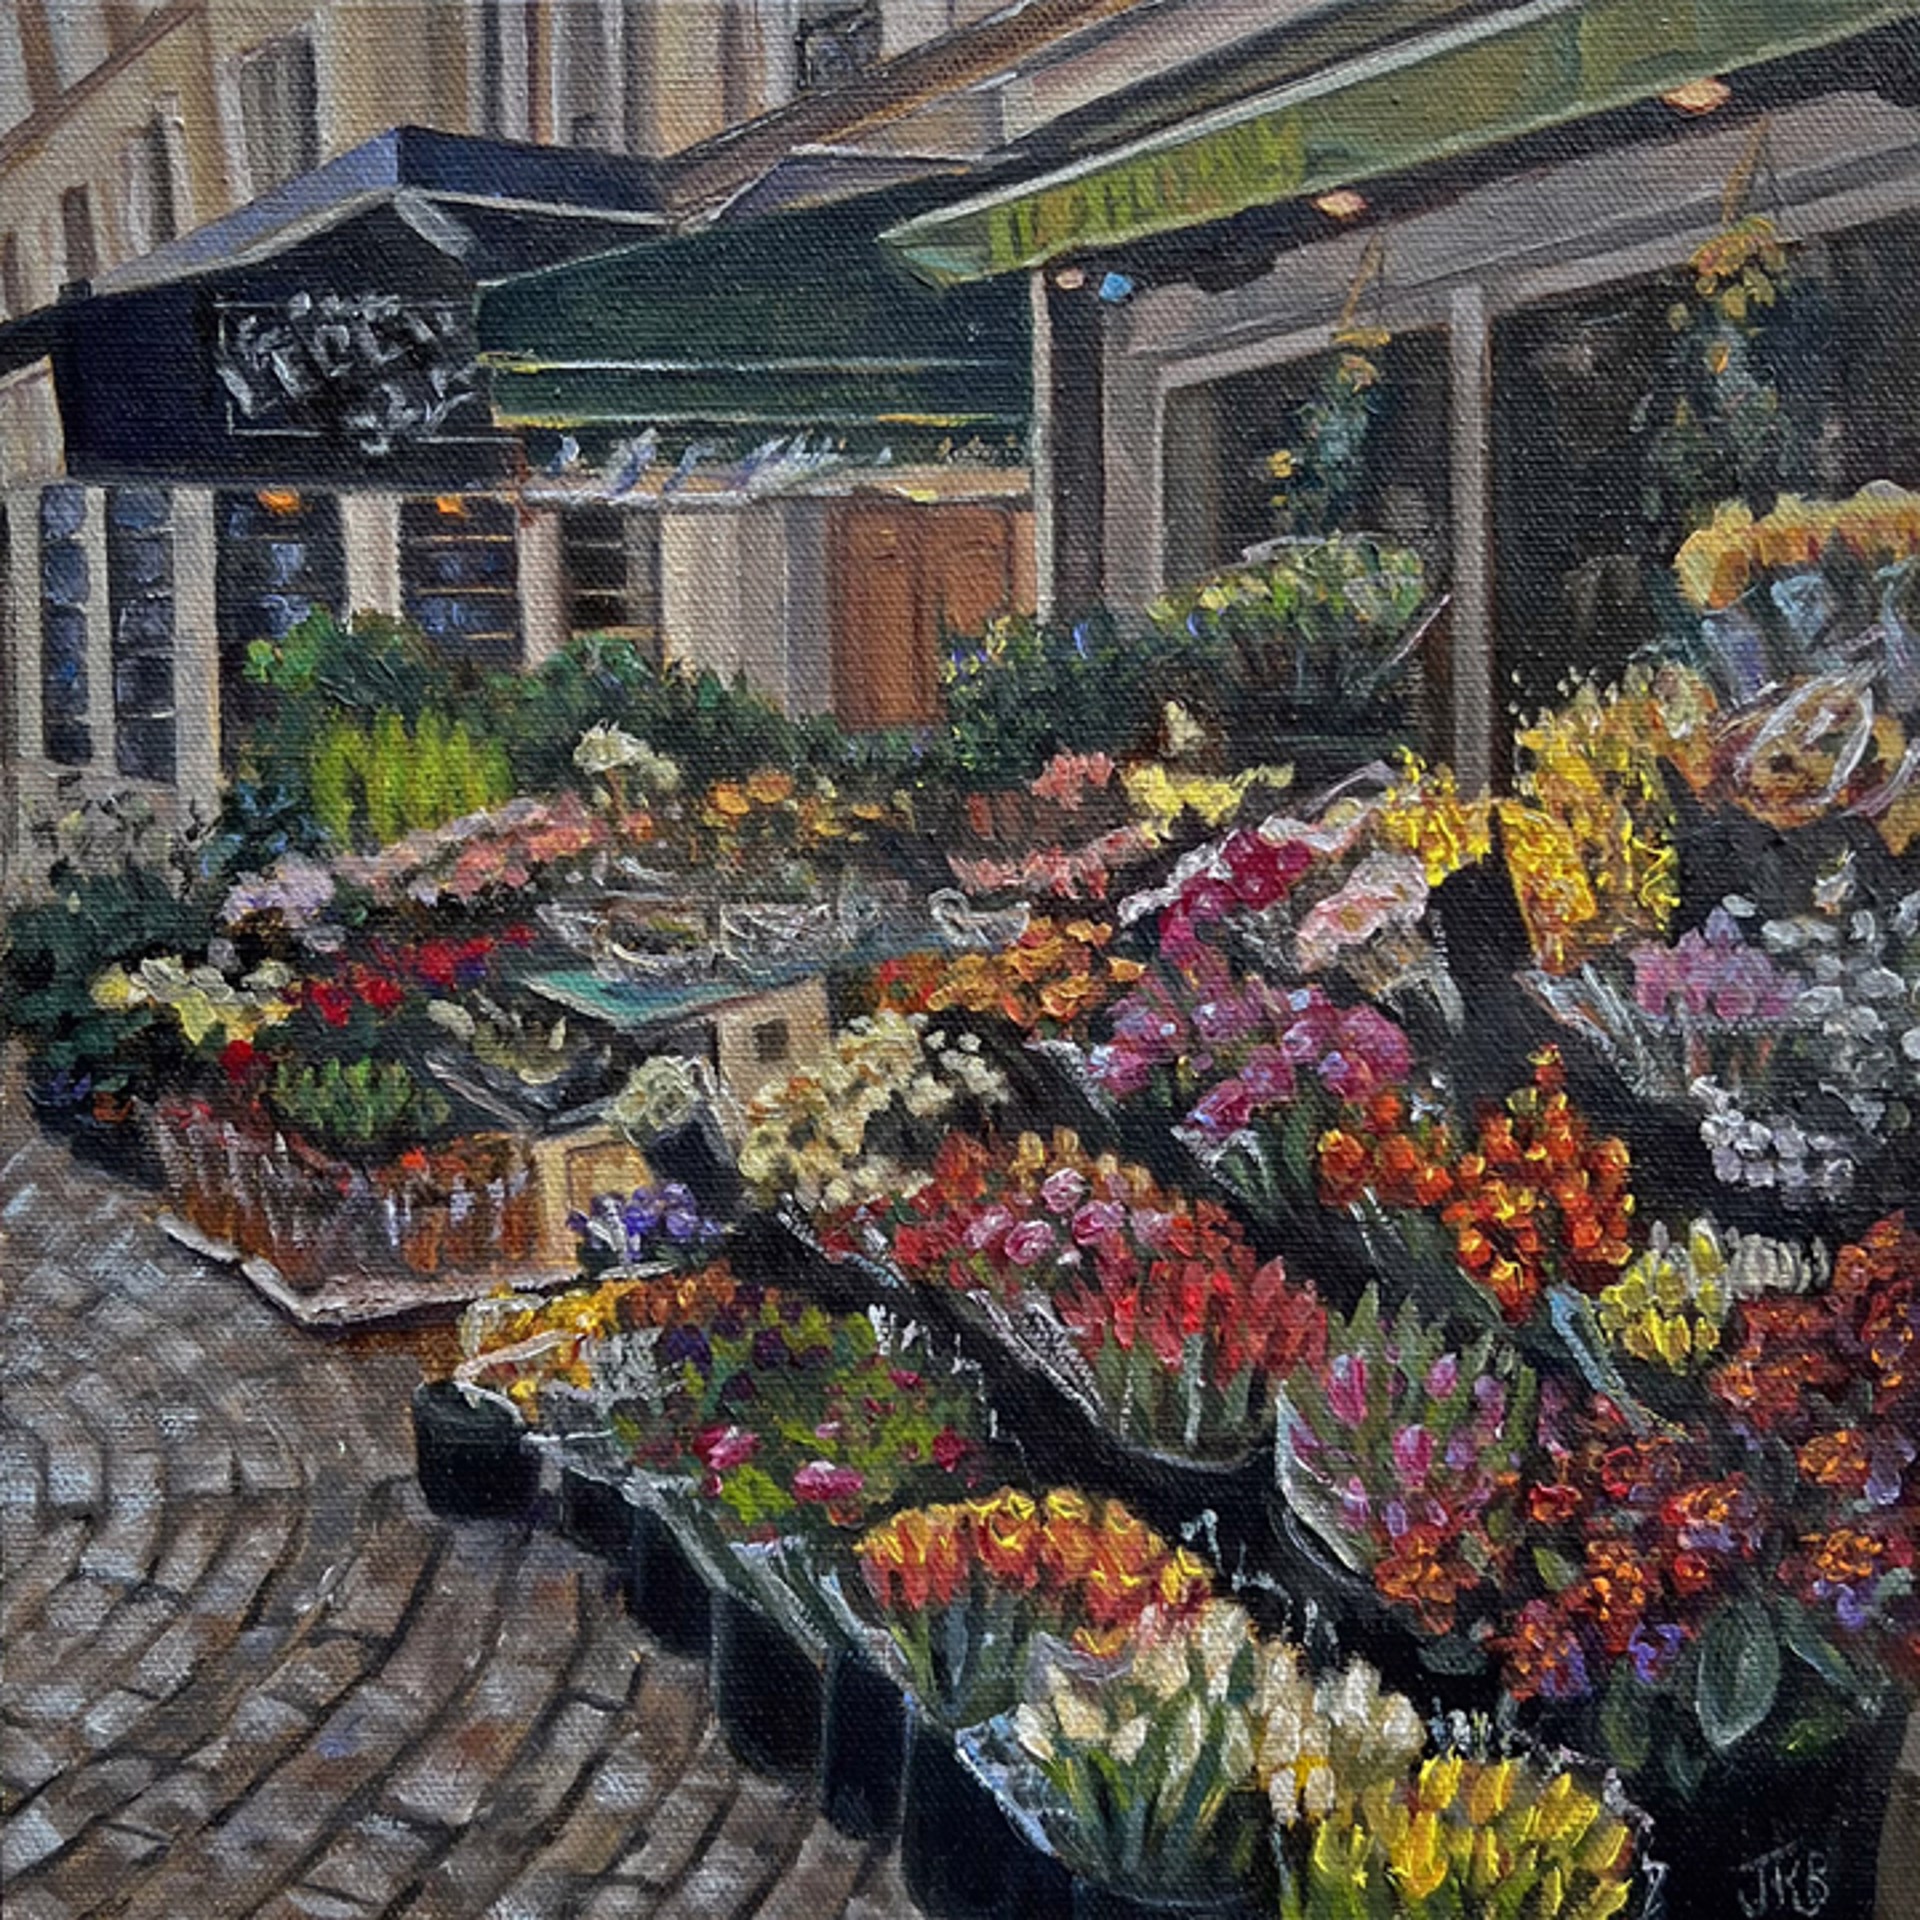 Les Floralies by Jennifer Barlow